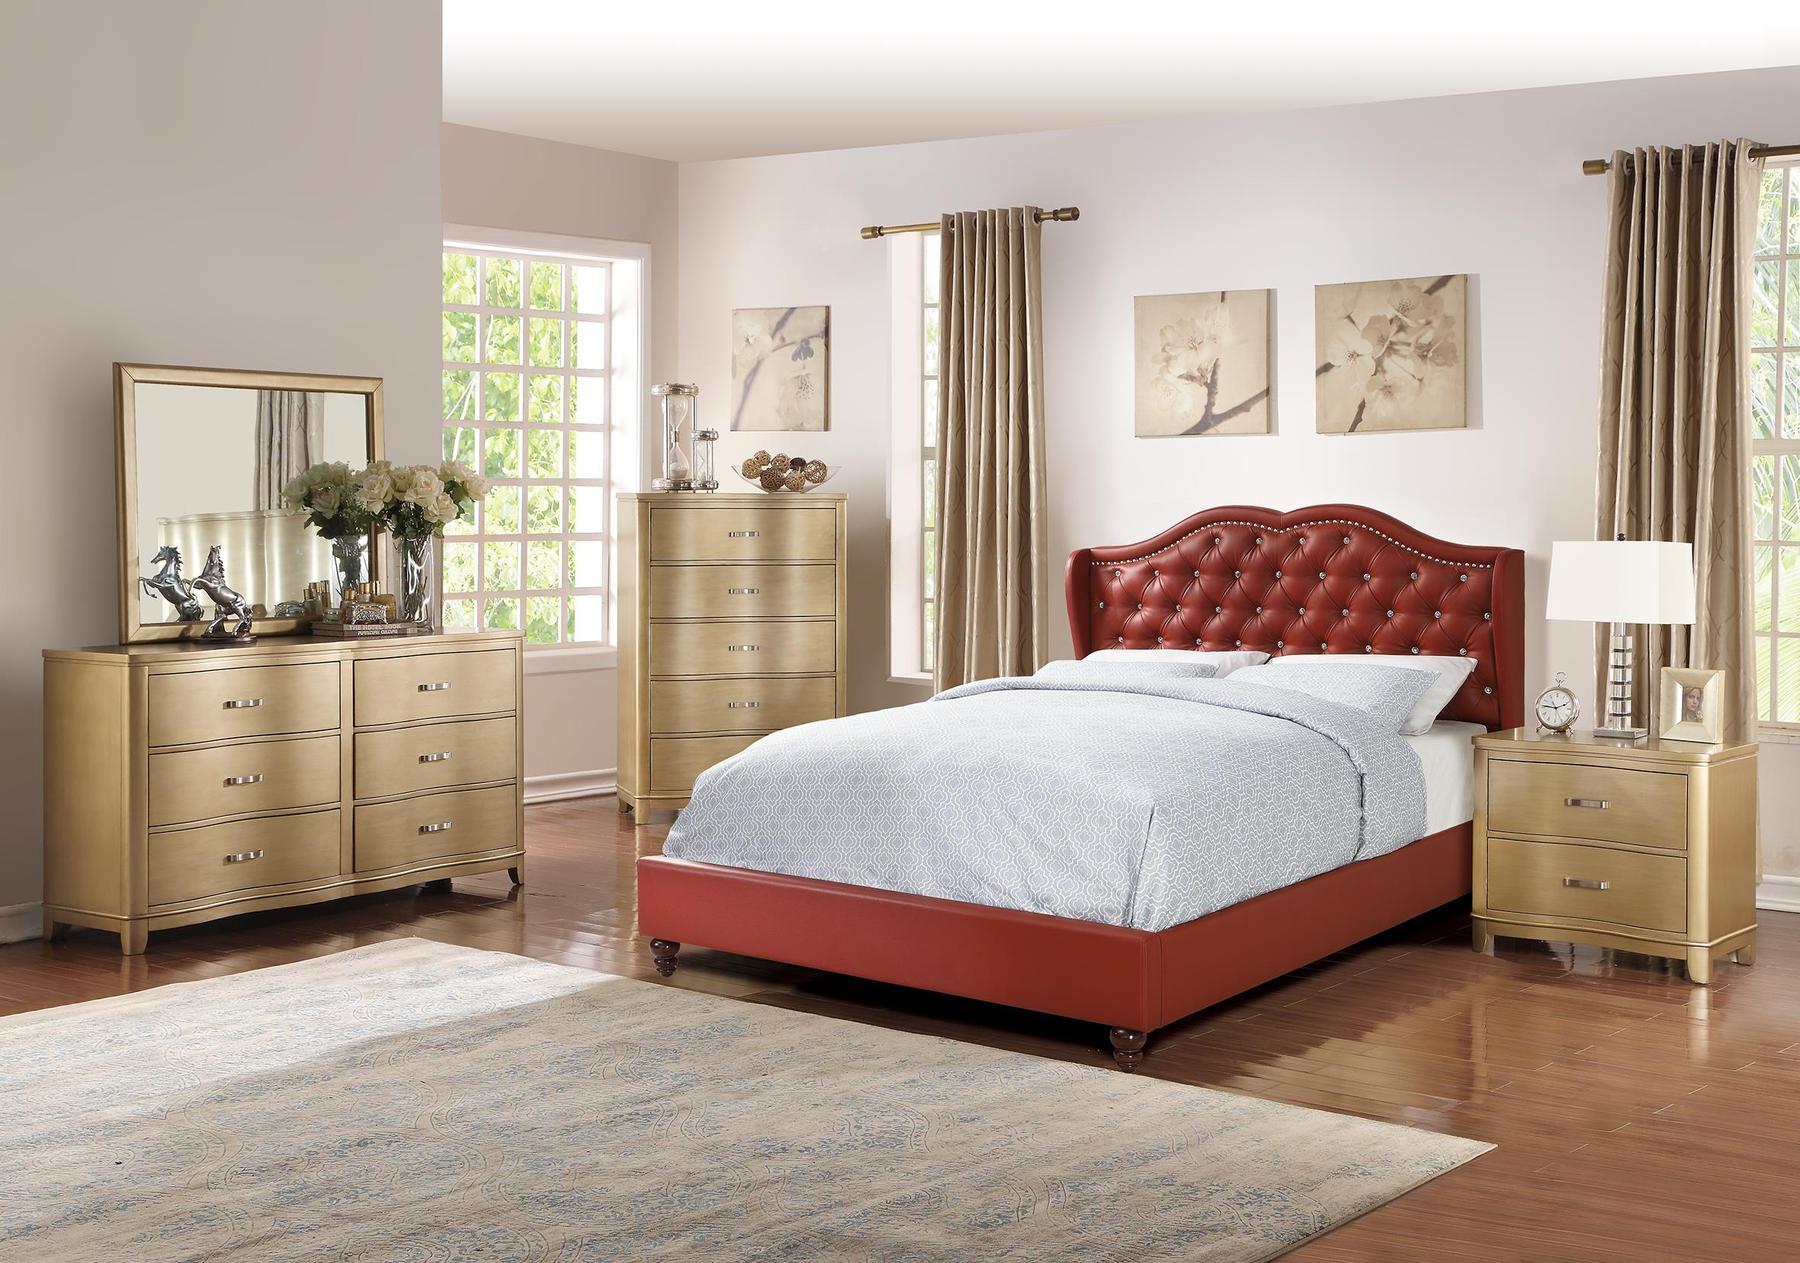 

    
Poundex Furniture F9366 Platform Bed Red F9366CK
